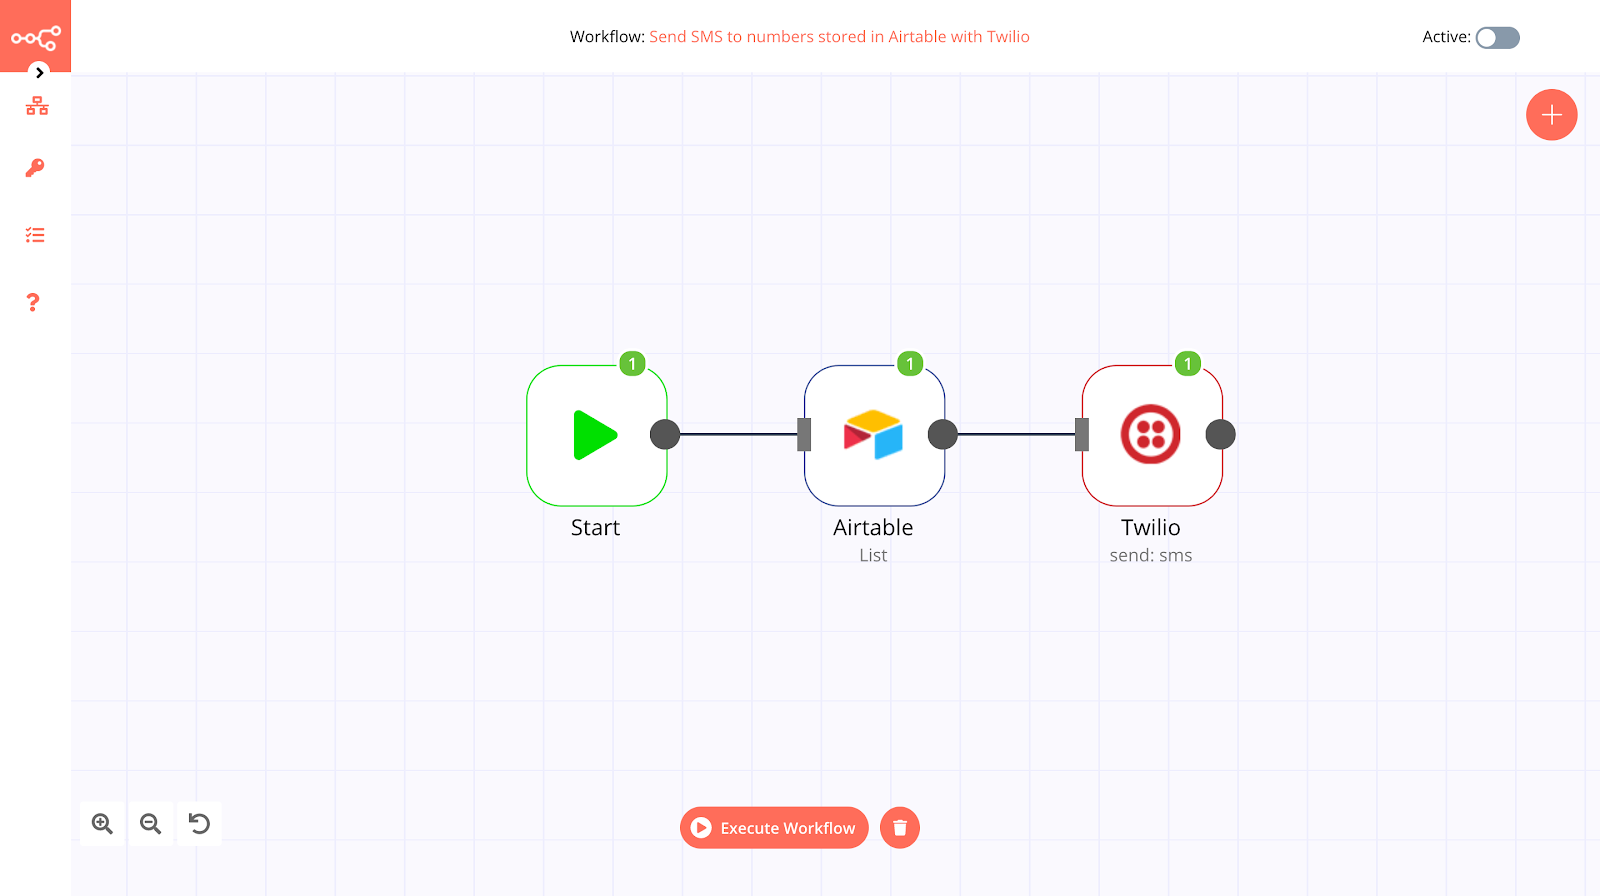 n8n workflow designer screenshot showing completed workflow